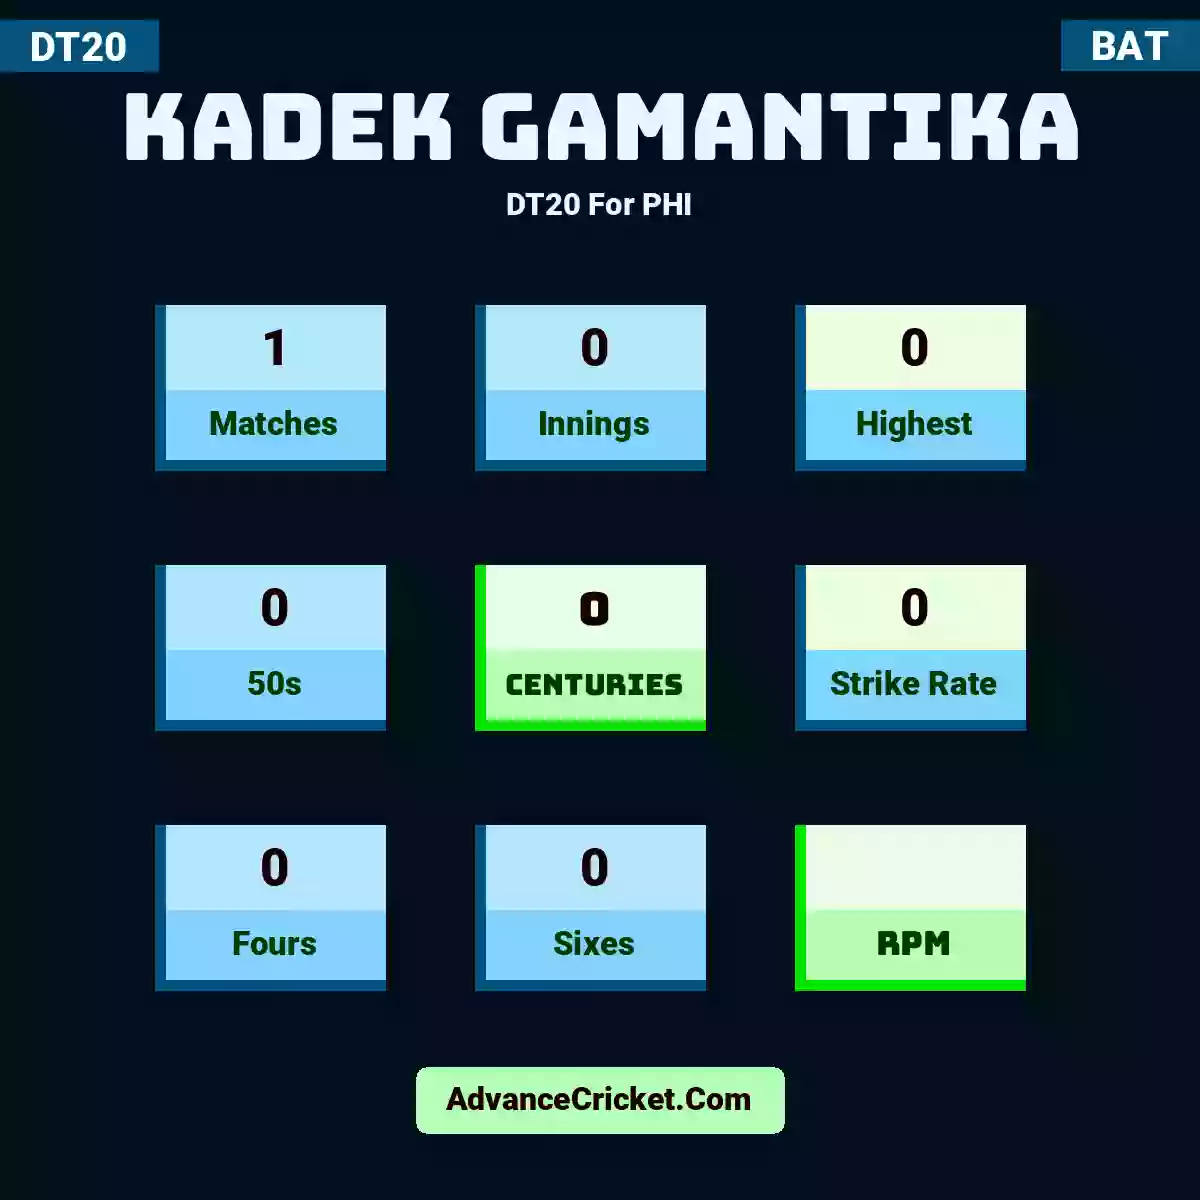 Kadek Gamantika DT20  For PHI, Kadek Gamantika played 1 matches, scored 0 runs as highest, 0 half-centuries, and 0 centuries, with a strike rate of 0. K.Gamantika hit 0 fours and 0 sixes.